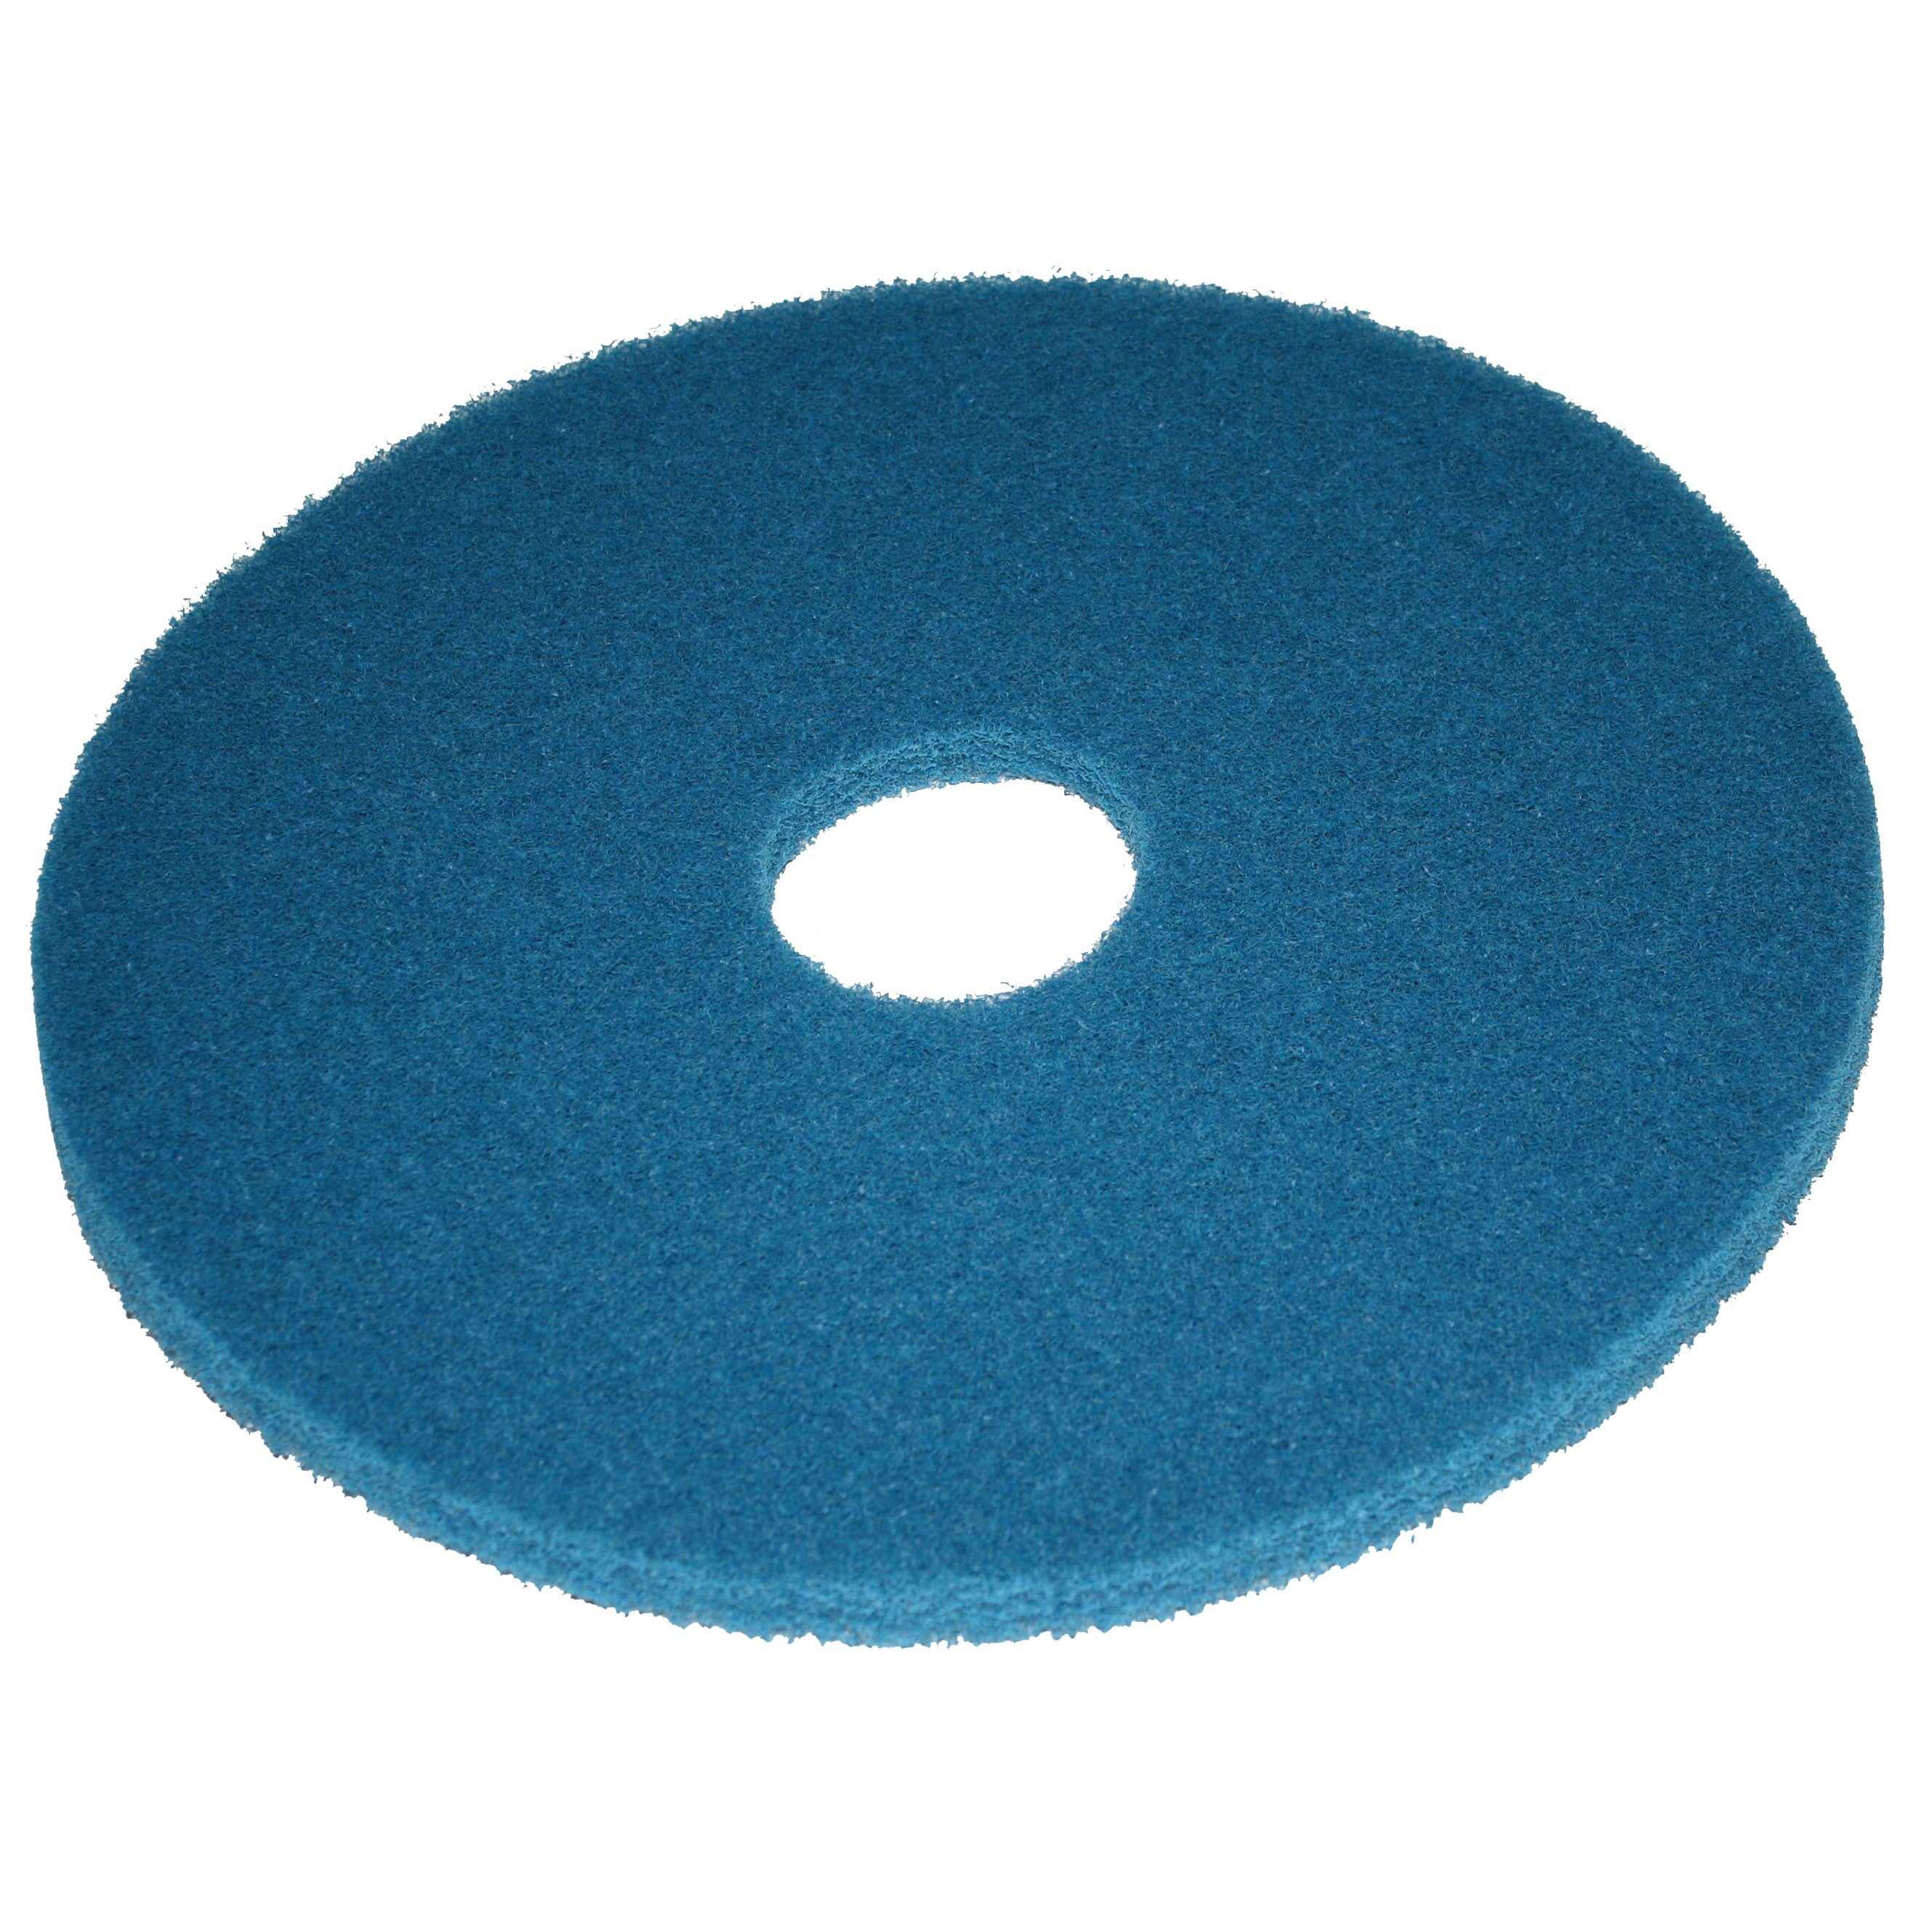 Pad bleu, Ø 432 mm, polyester